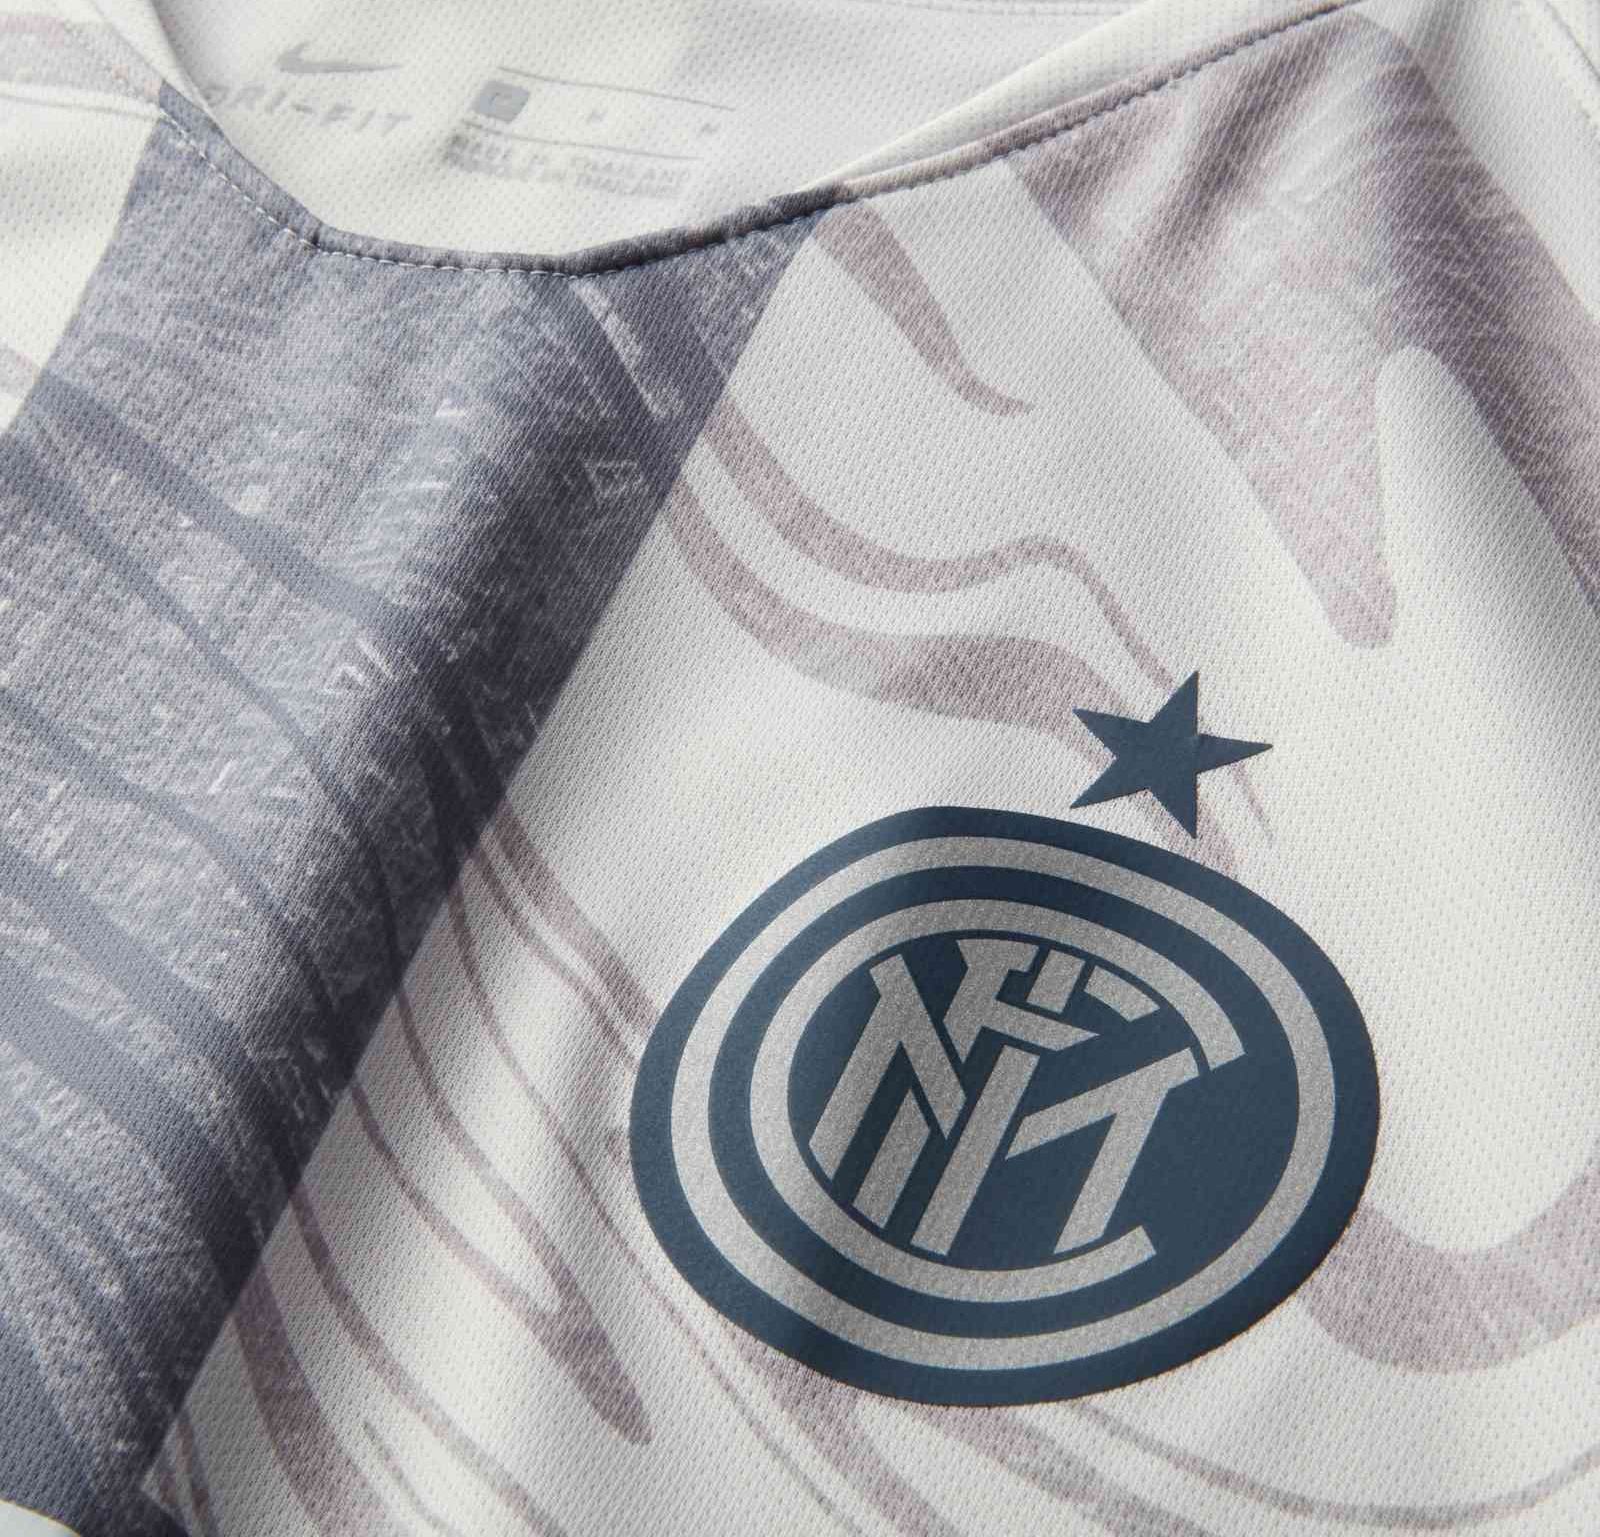 Inter lança nova camisa reserva para a temporada; veja fotos e